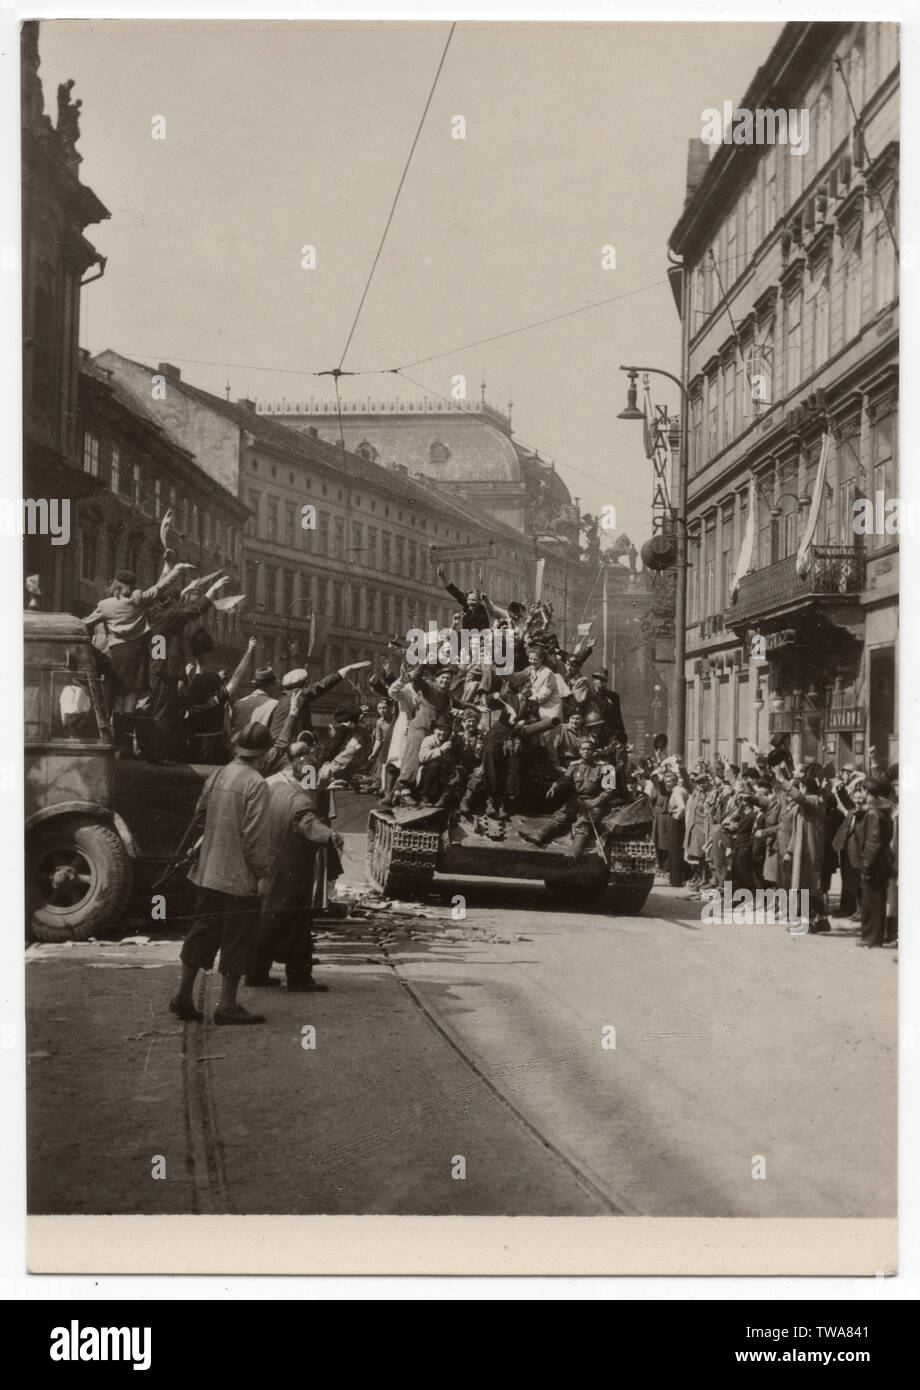 Armata rossa serbatoio T-34 in Národní Avenue (Národní třída) a Praga, Cecoslovacchia, il 9 maggio 1945. Fotografia in bianco e nero pubblicato in cecoslovacco cartolina vintage rilasciati nel 1955. La cortesia dell'Azoor Collezione Cartoline. Foto Stock